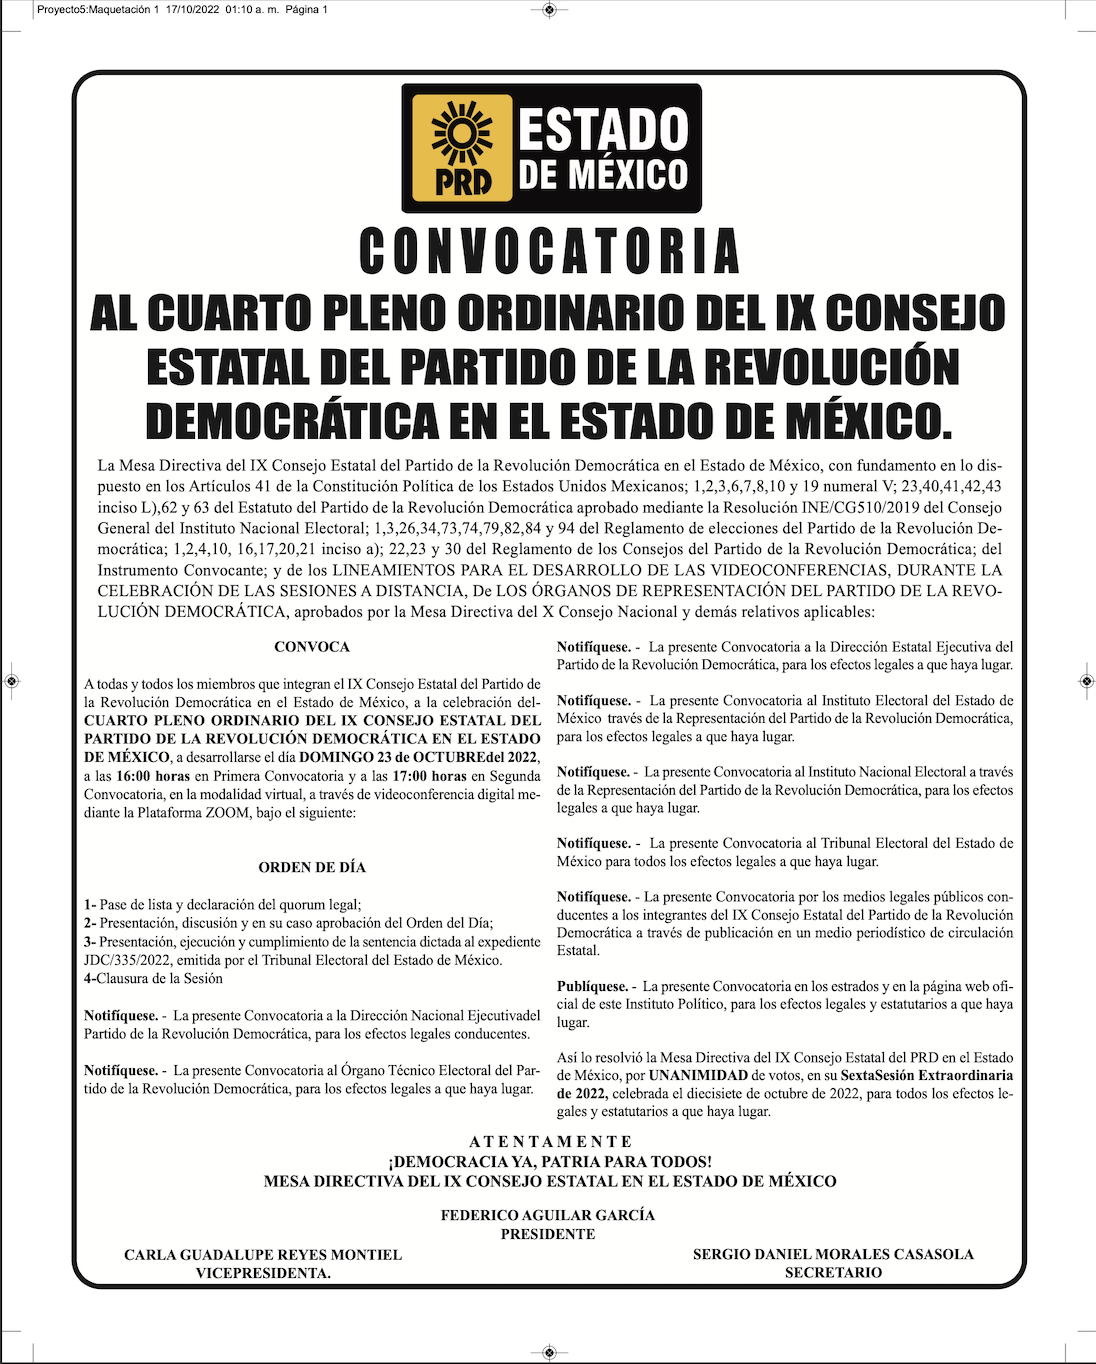 Convocatoria al 4° Pleno Ordinario del IX Consejo Estatal del Partido de la Revolución Democrática en el Estado de México.